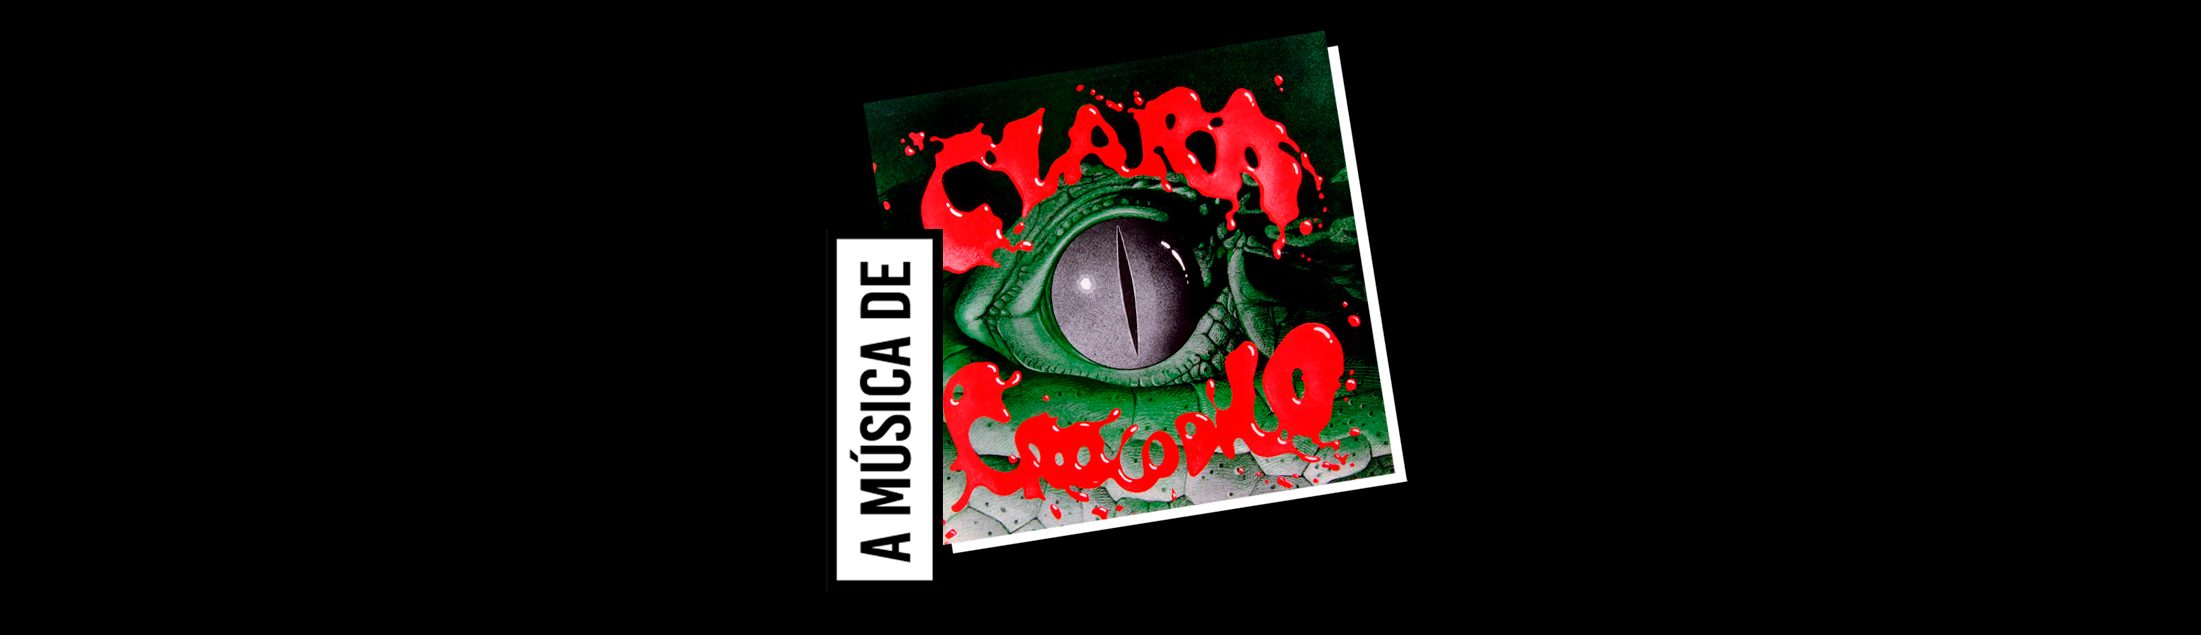 Um disco para ouvir e lembrar a saga do incapturável monstro sonoro de Arrigo Barnabé